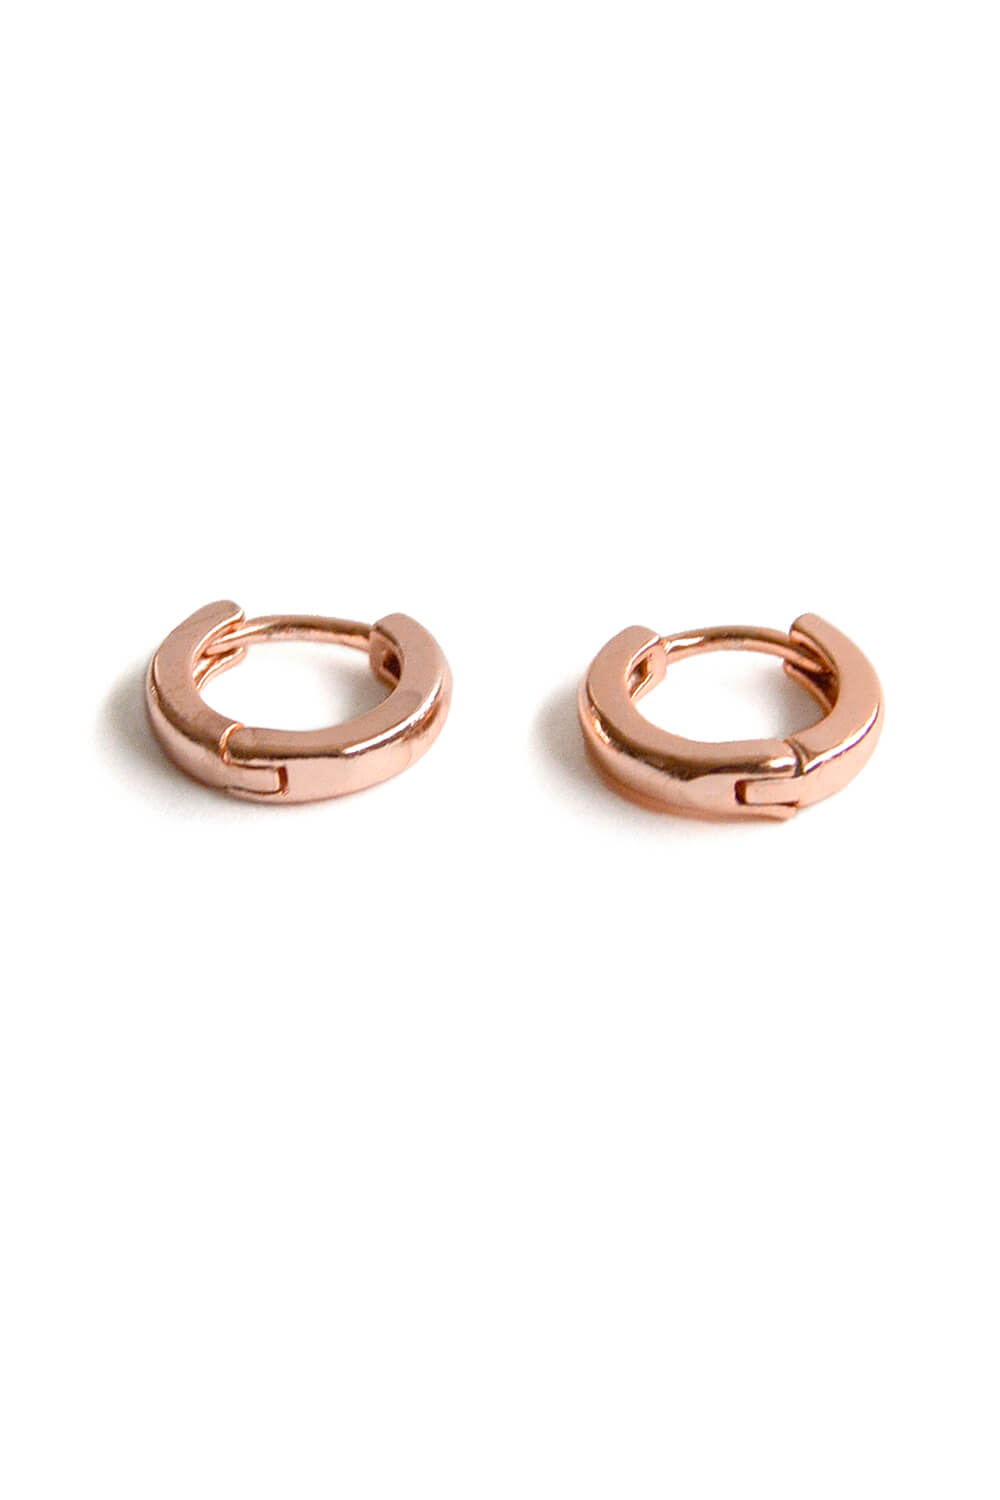 huggie hoop earrings - rose gold